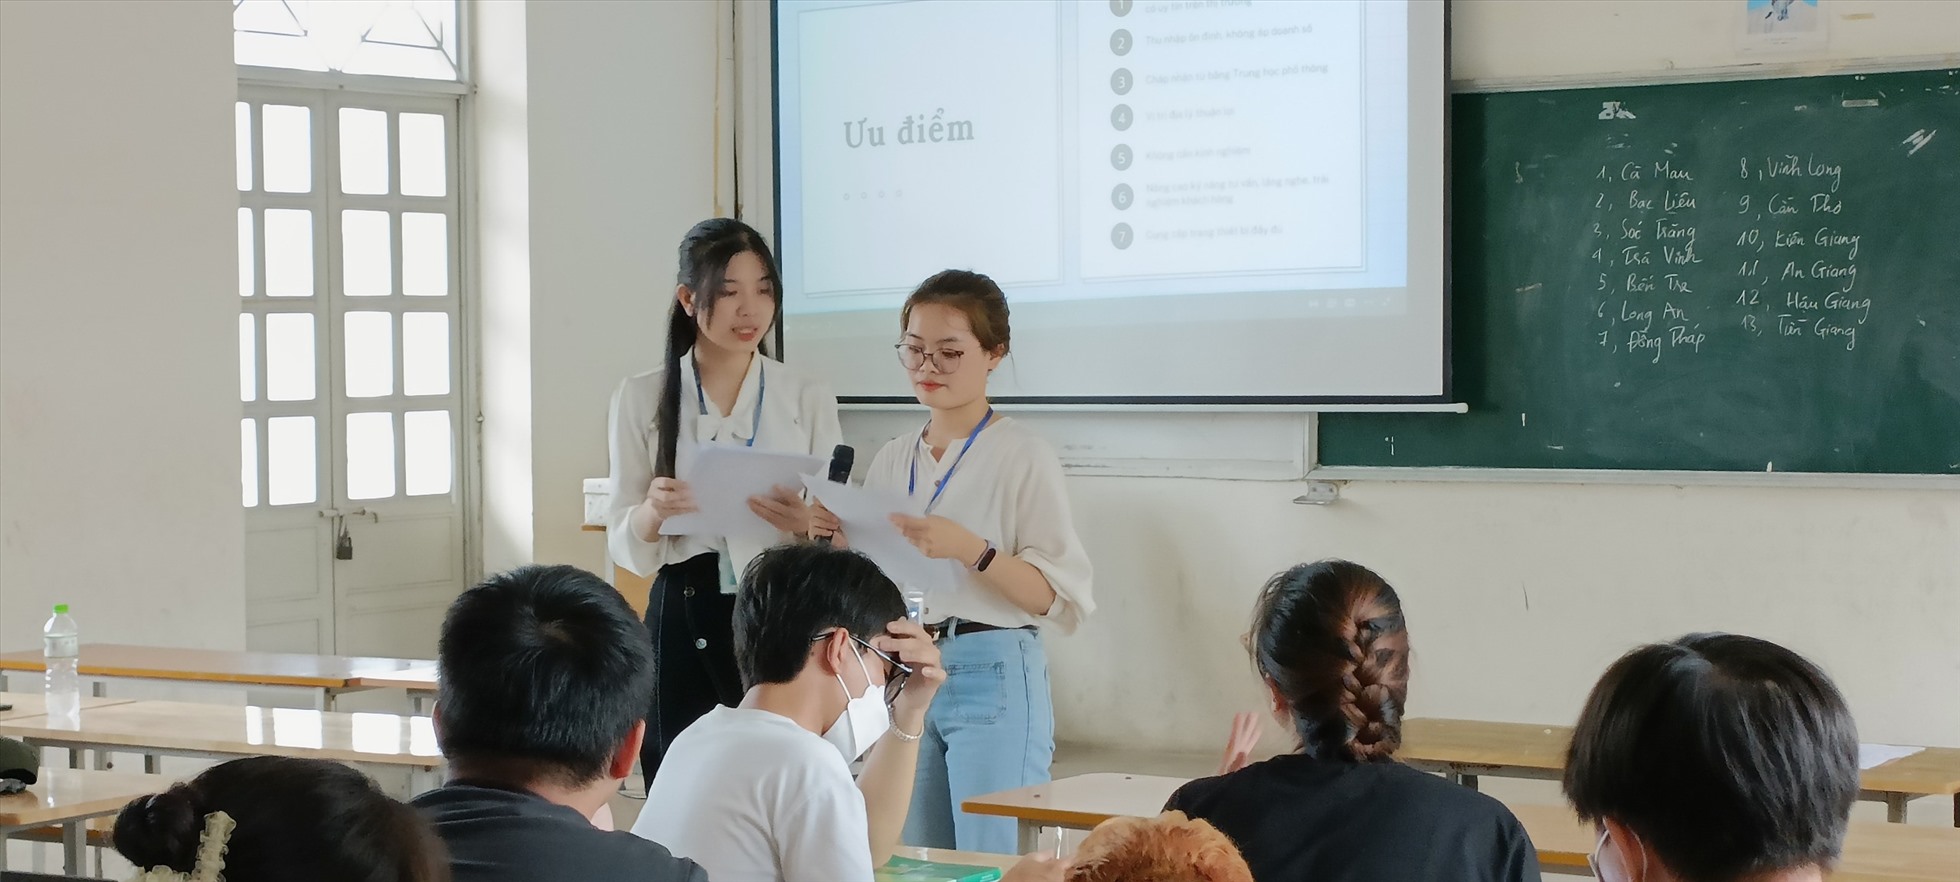 Mai Vân tham gia chia sẻ cùng các bạn sinh viên các trường đại học (Ảnh: Nhân vật cung cấp)